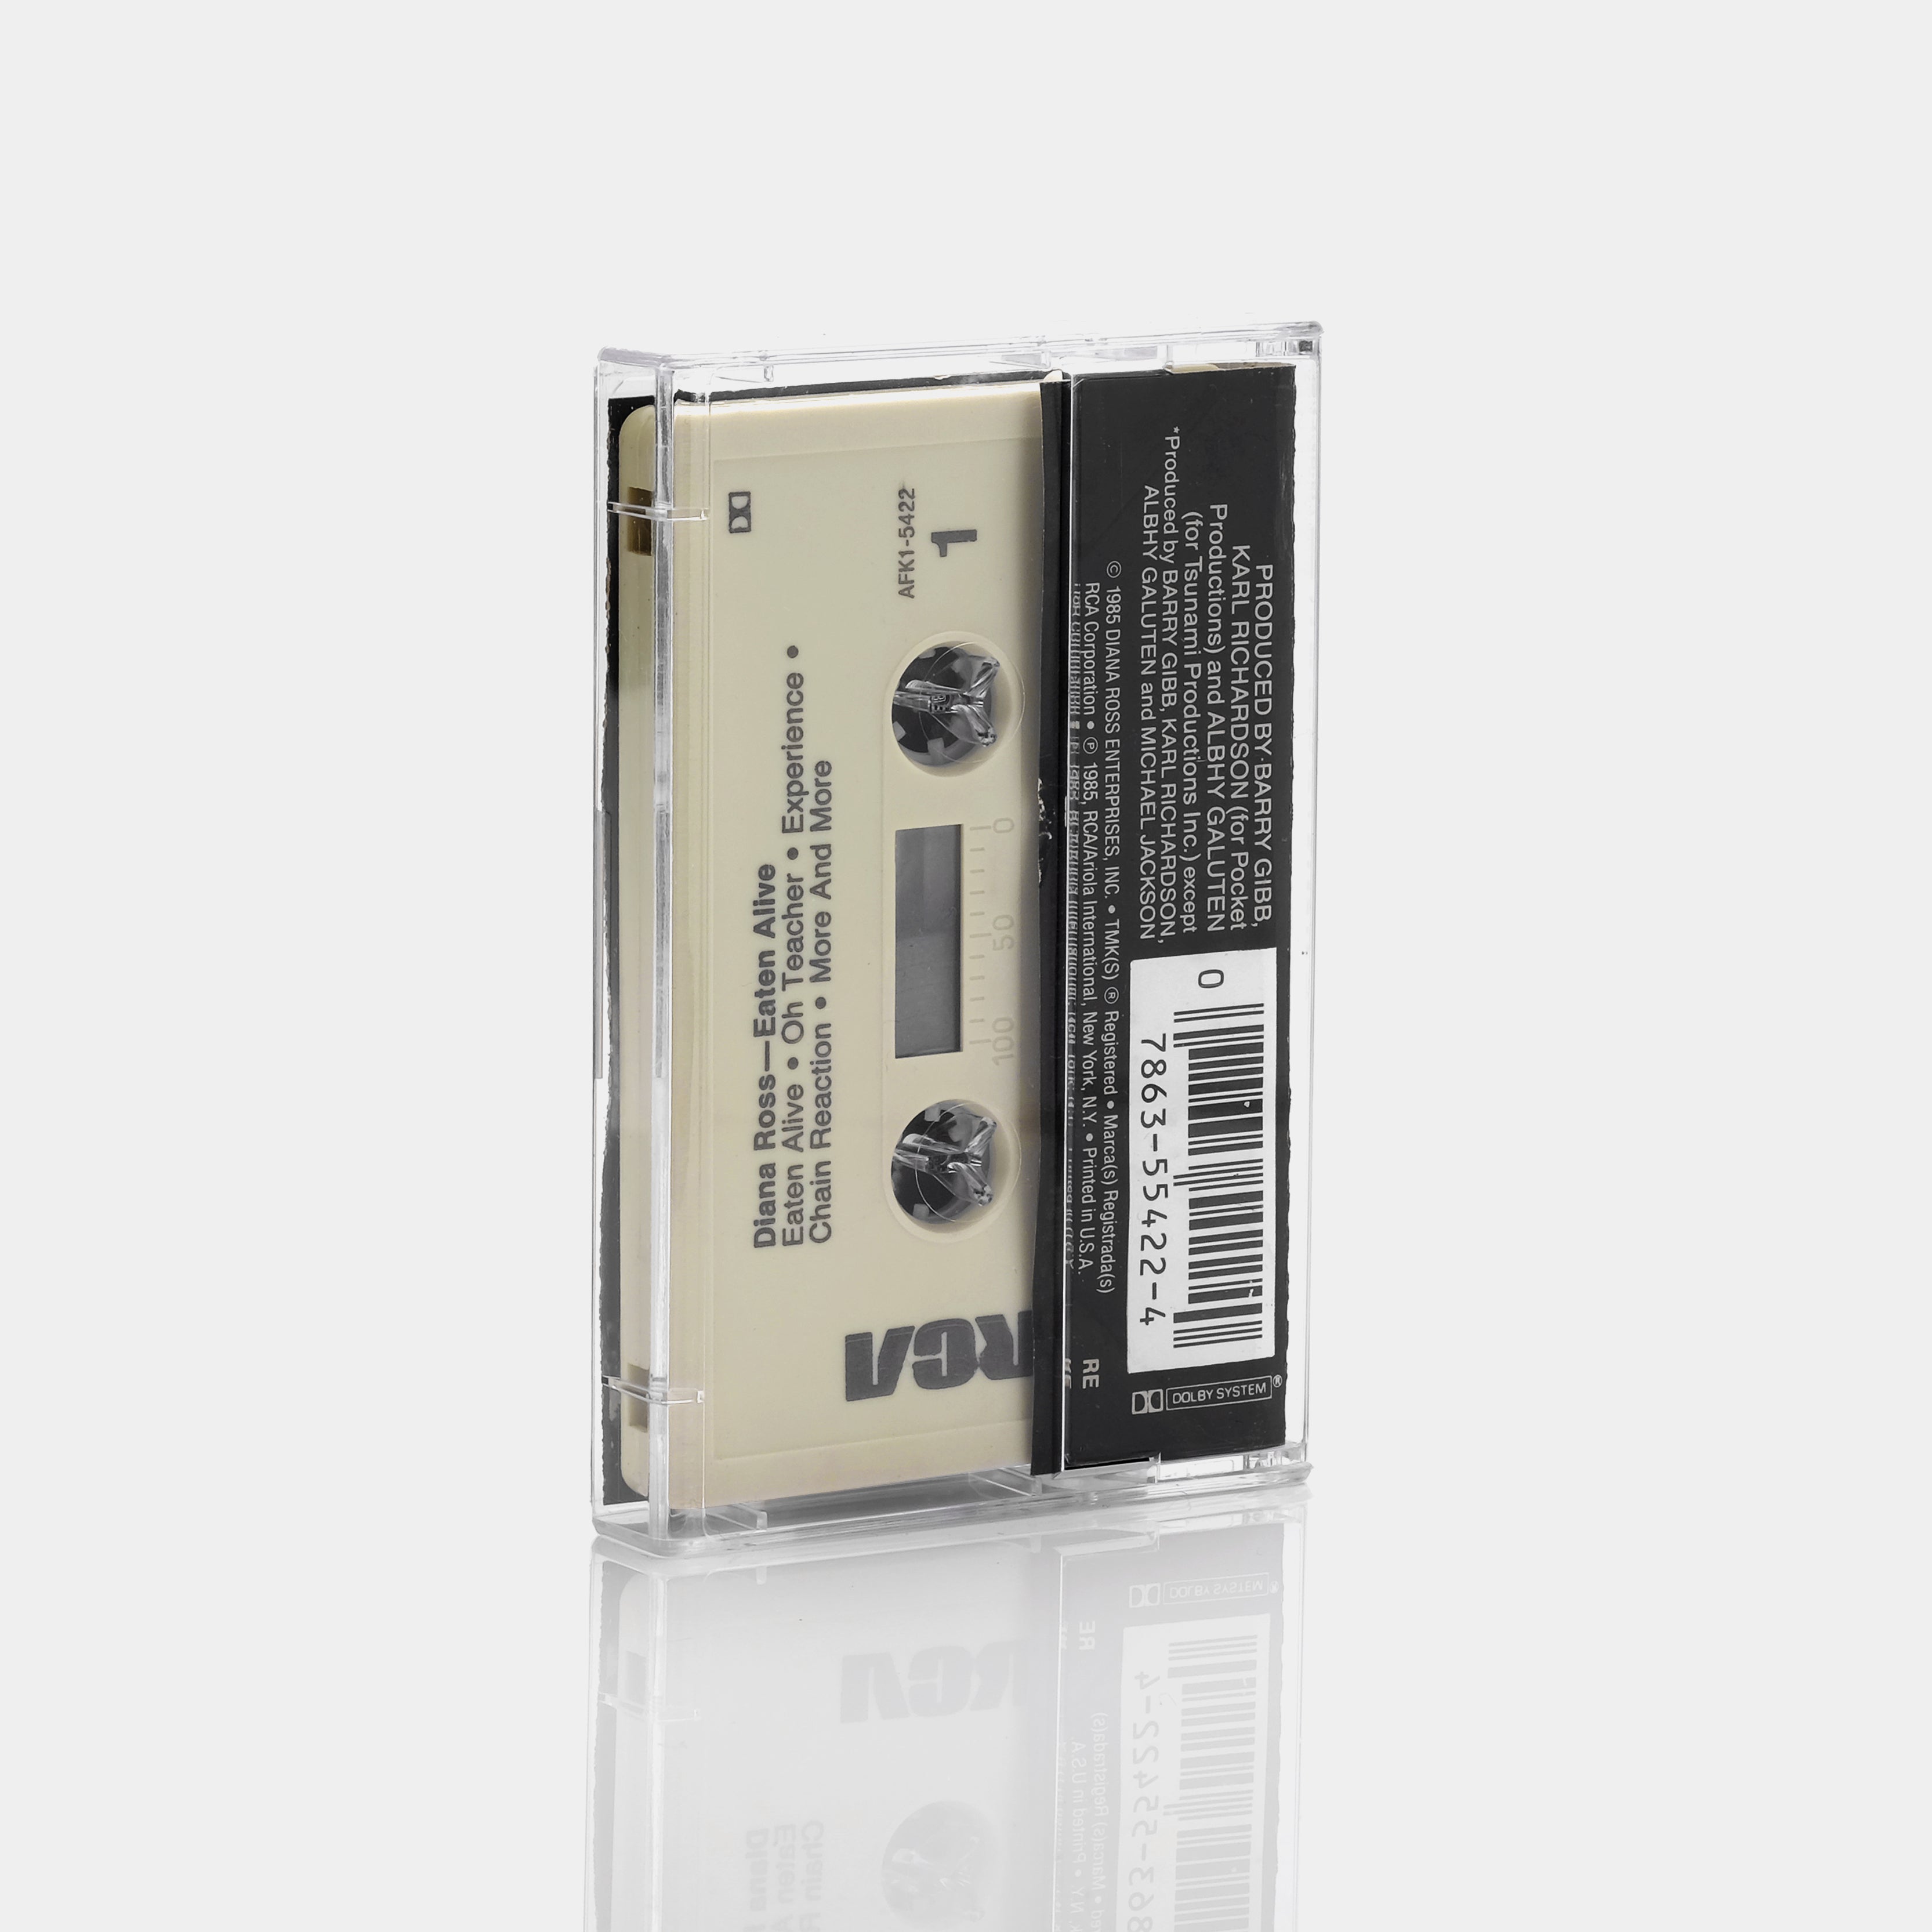 Diana Ross - Eaten Alive Cassette Tape